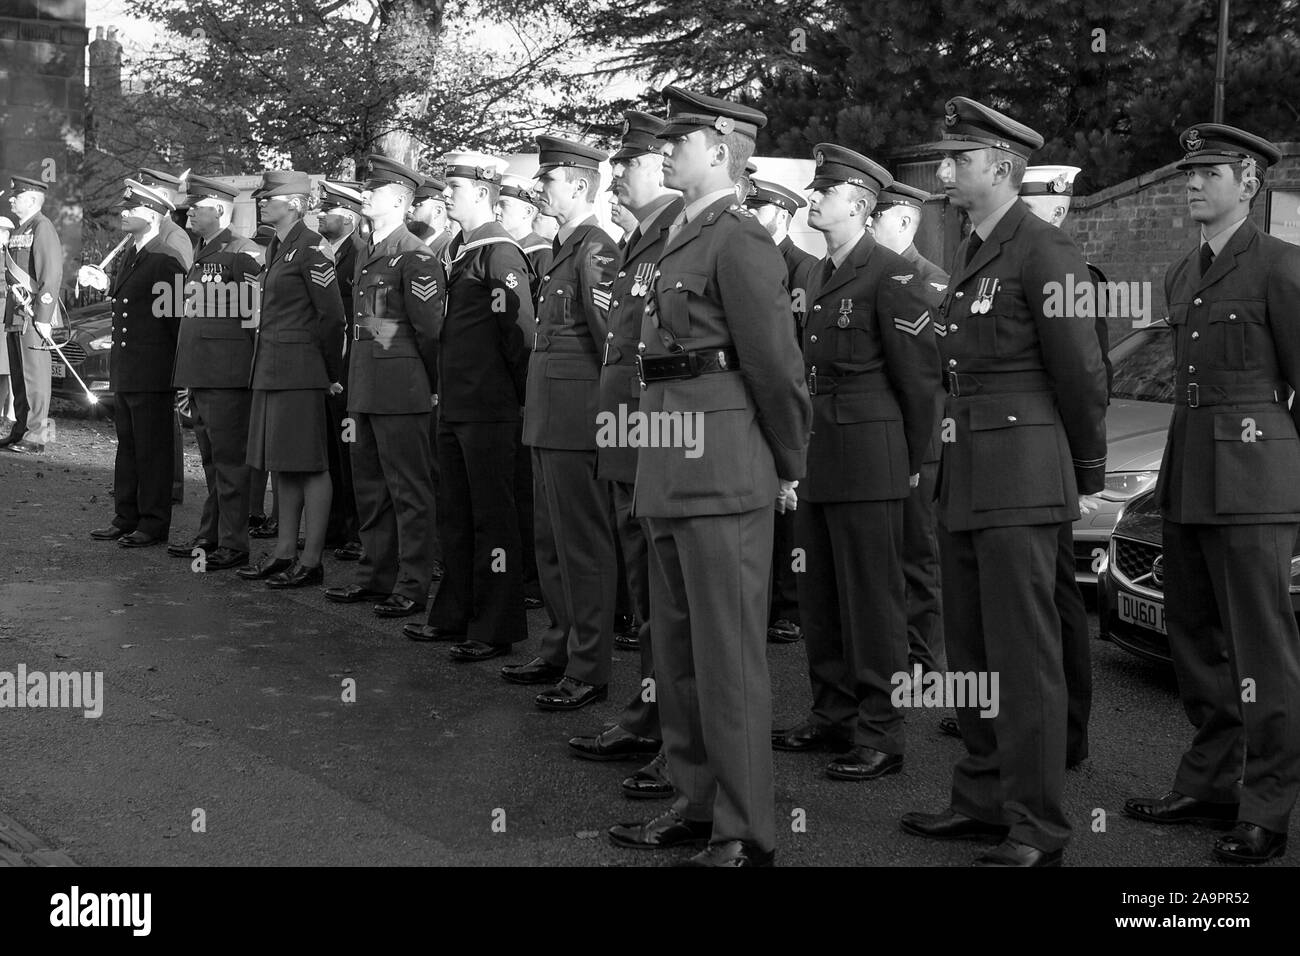 Ricordo domenica commemorazioni presso il St Chad's Chiesa a Shrewsbury. RAF, della marina militare e il personale dell'esercito visualizzati qui presenti. Foto Stock